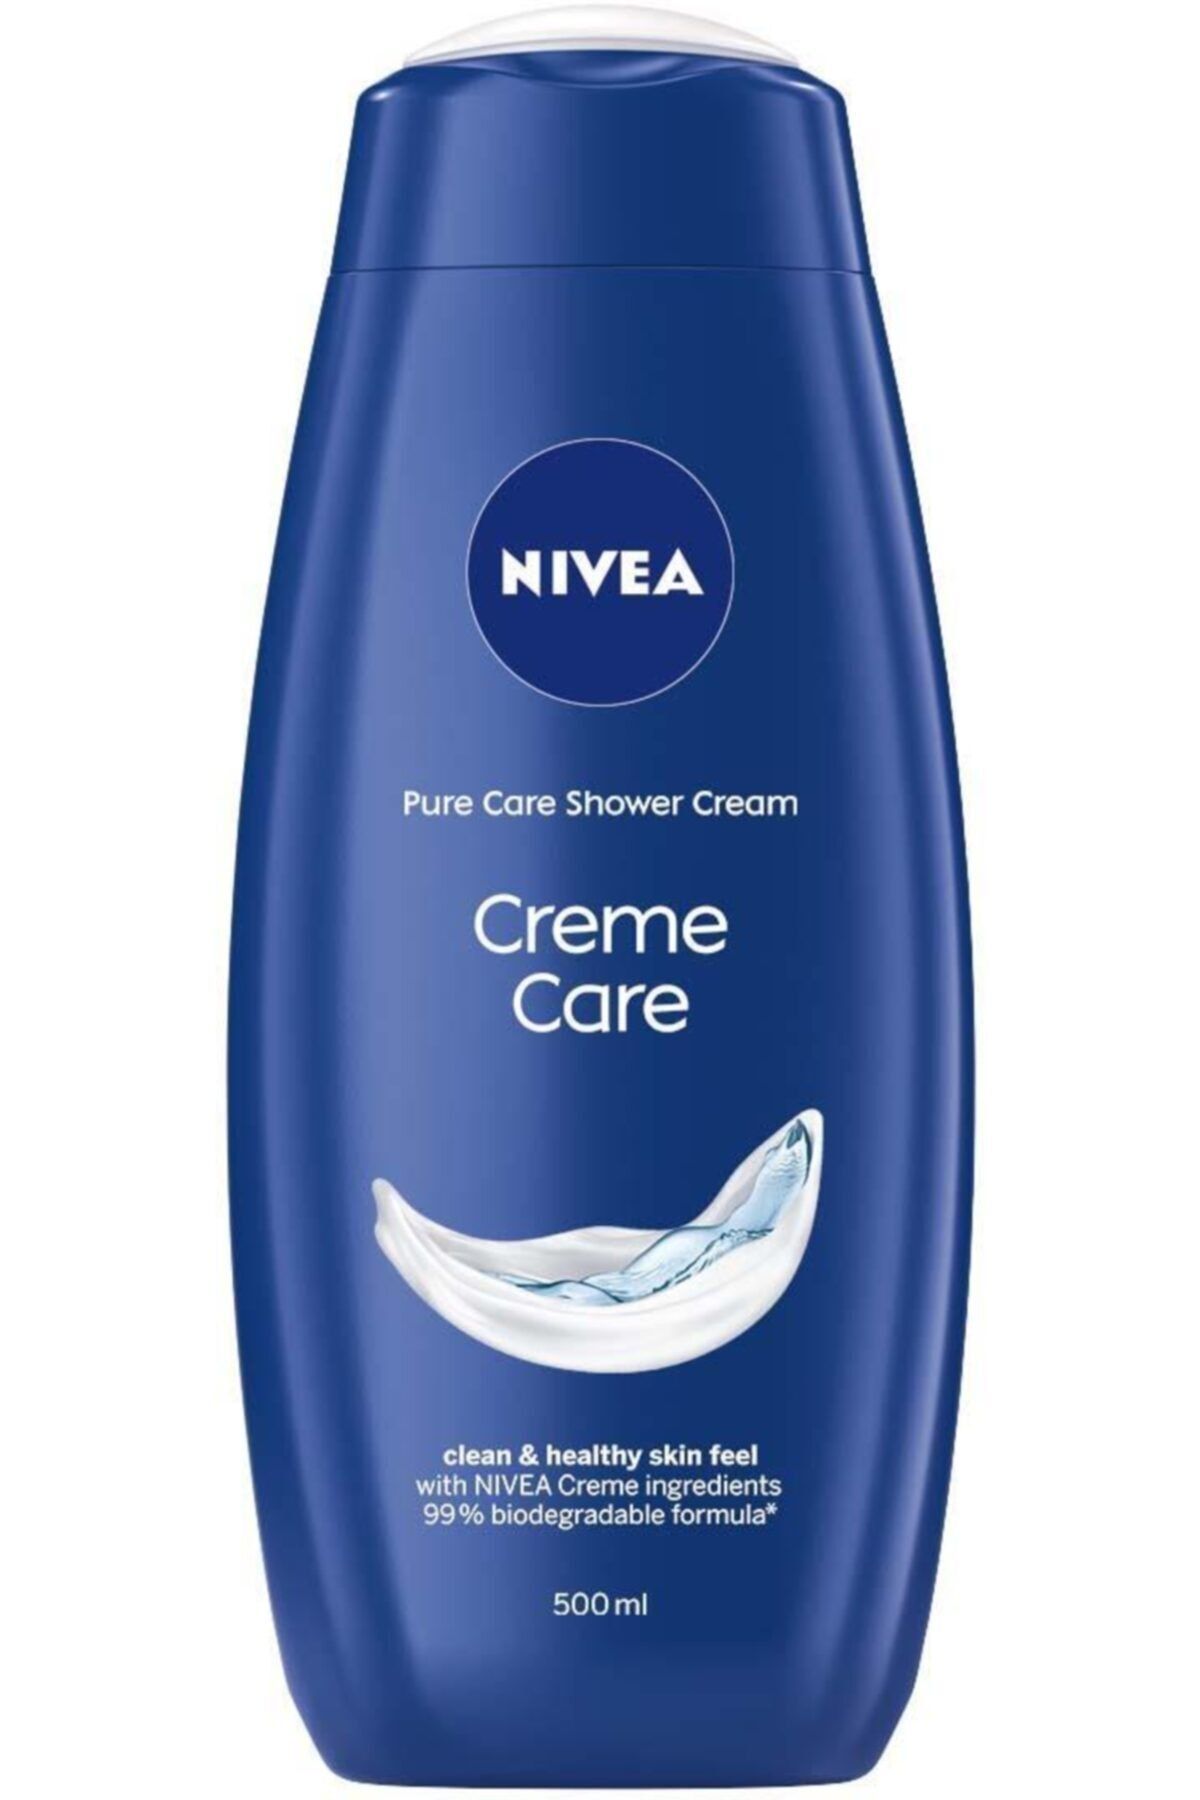 NIVEA Pure Care Shower Cream